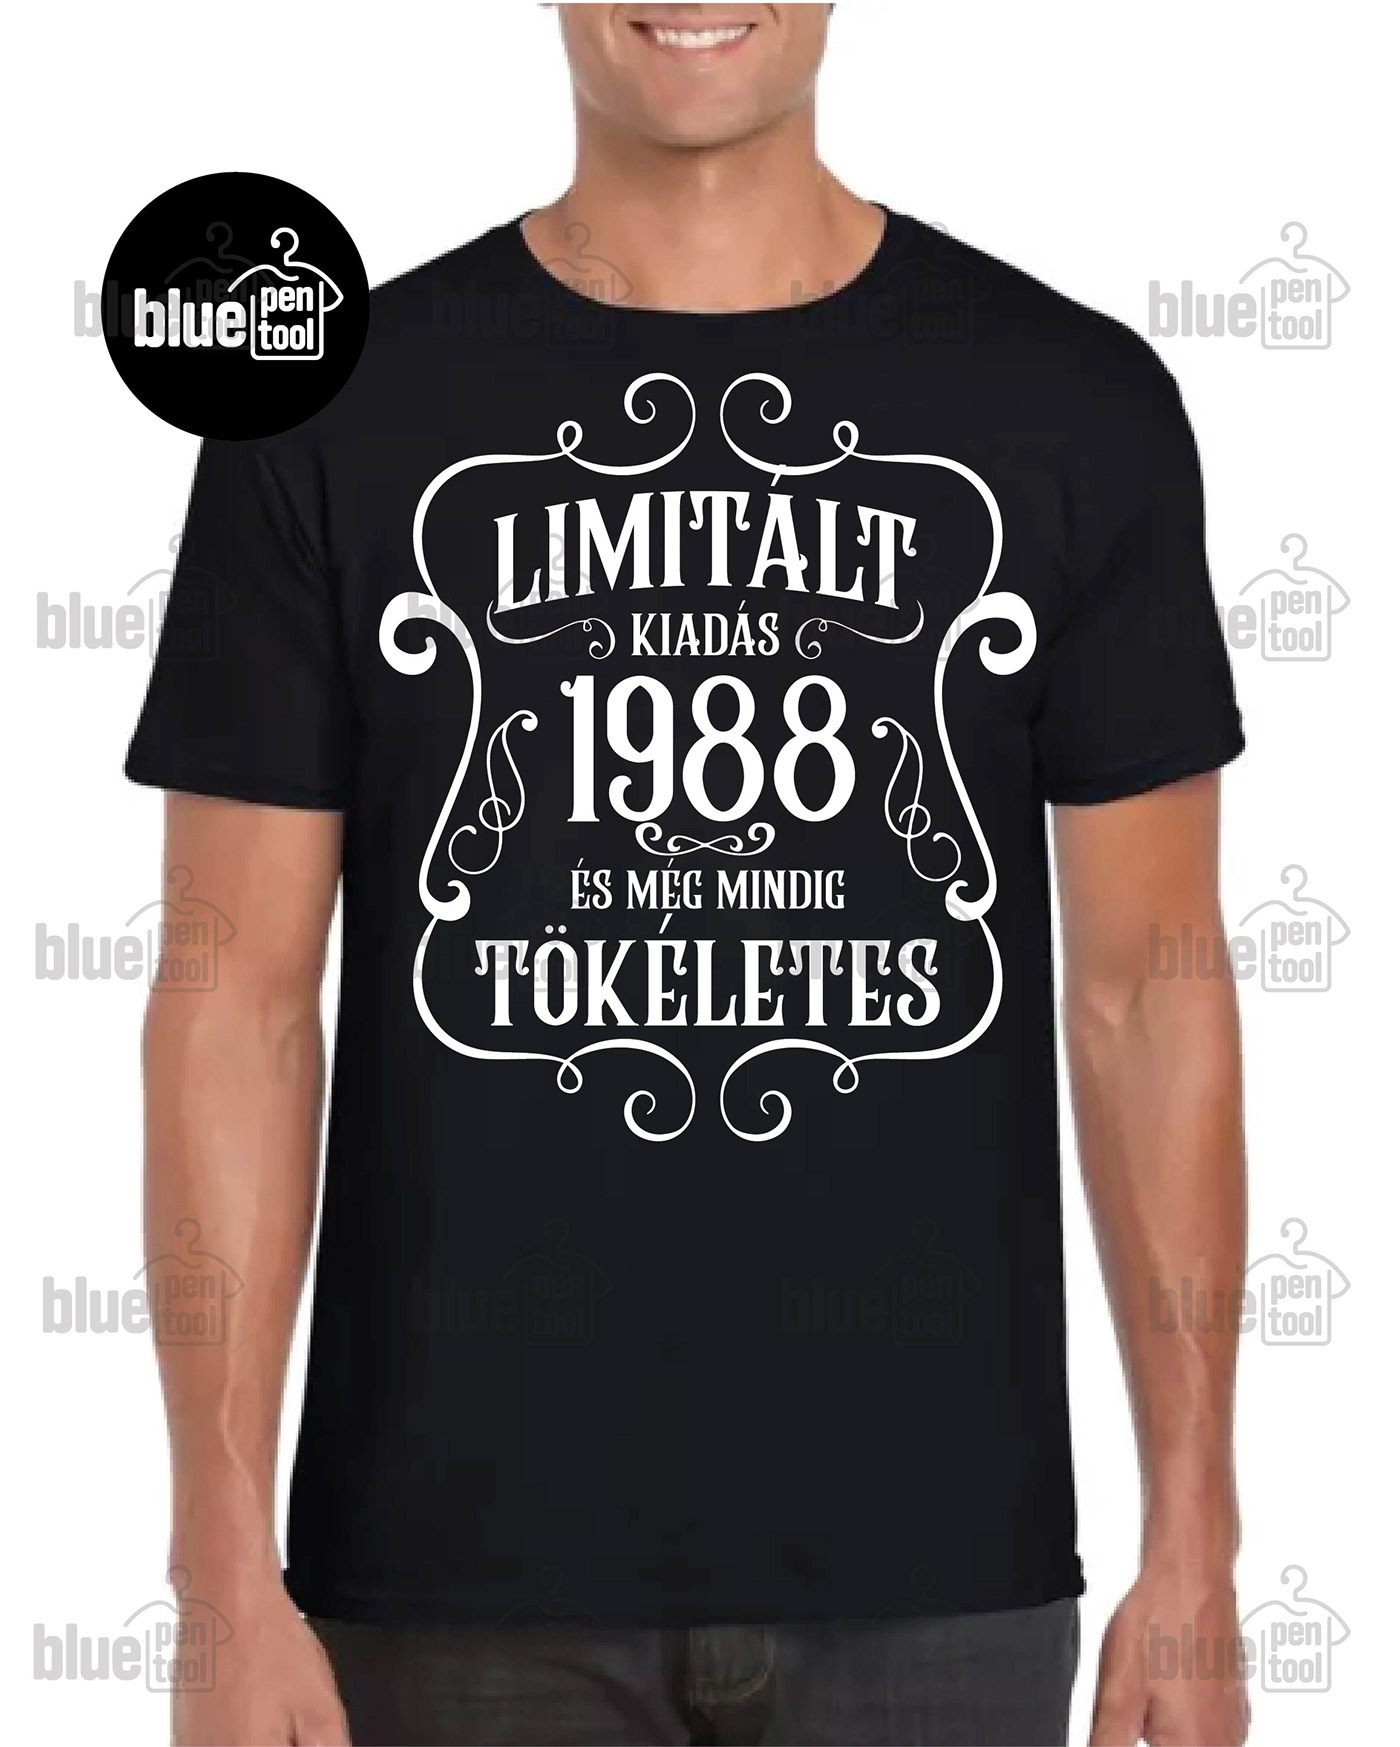 t-shirt design logo bluepentool Limitált kiadás polo születésnap születésnapi póló udvarhely